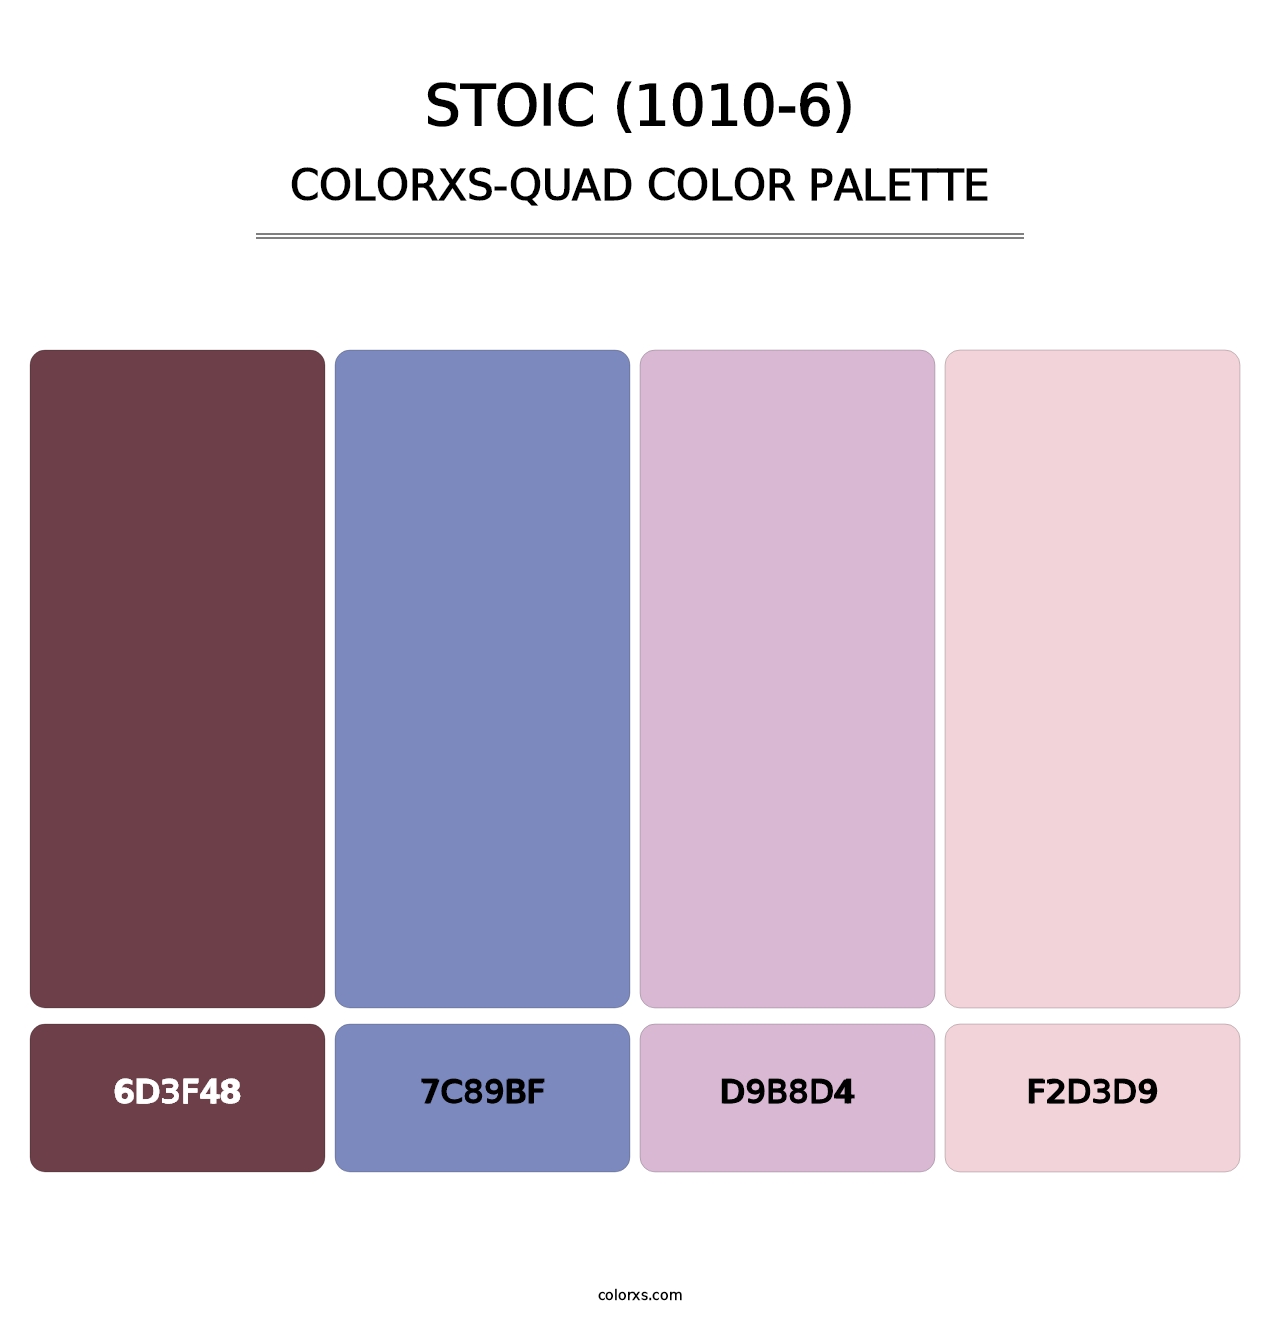 Stoic (1010-6) - Colorxs Quad Palette